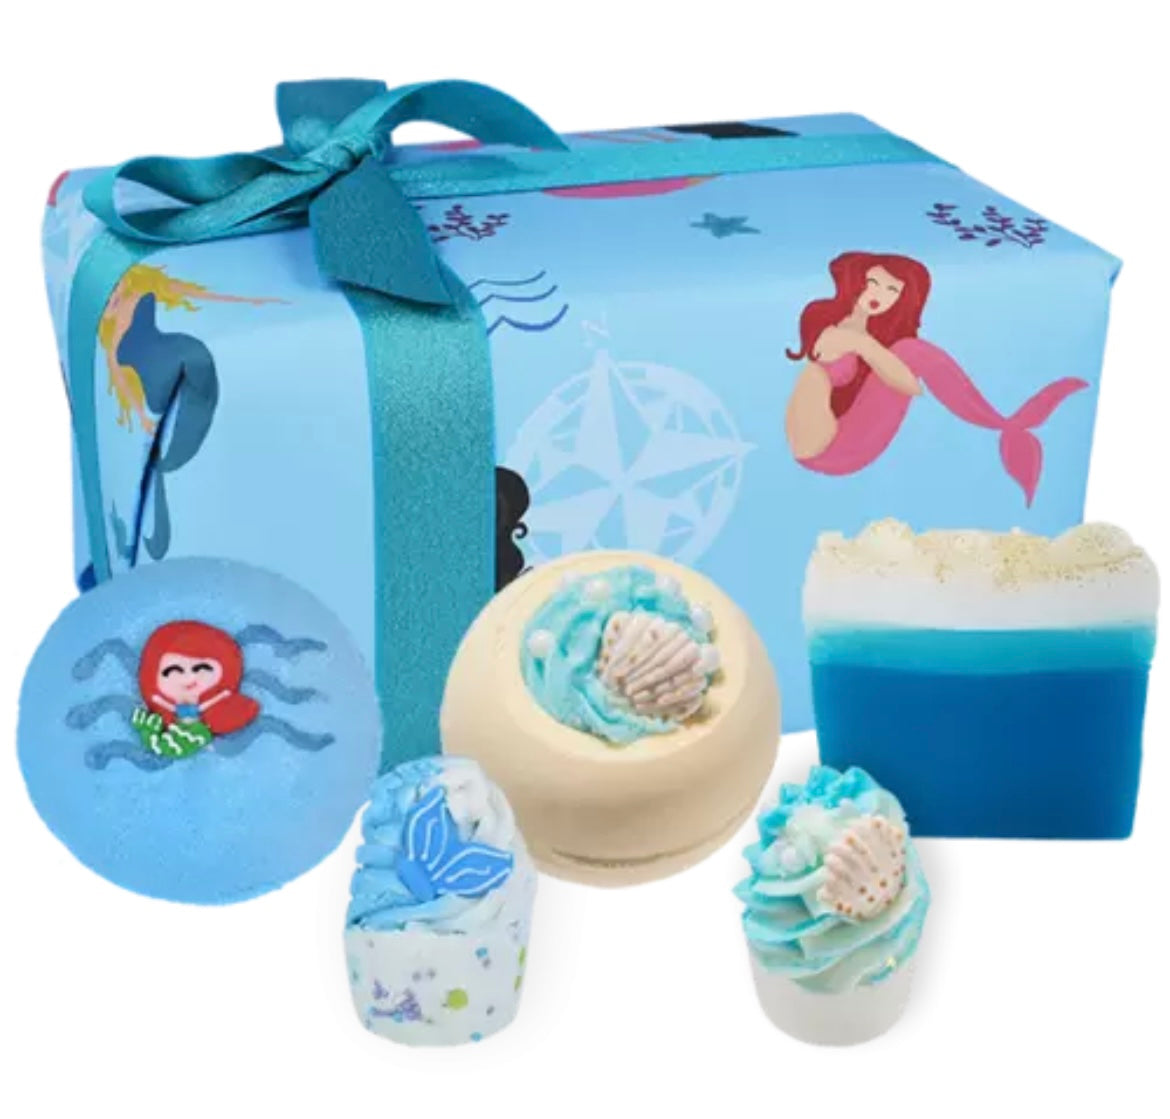 Mermaid Christmas Gift Pack